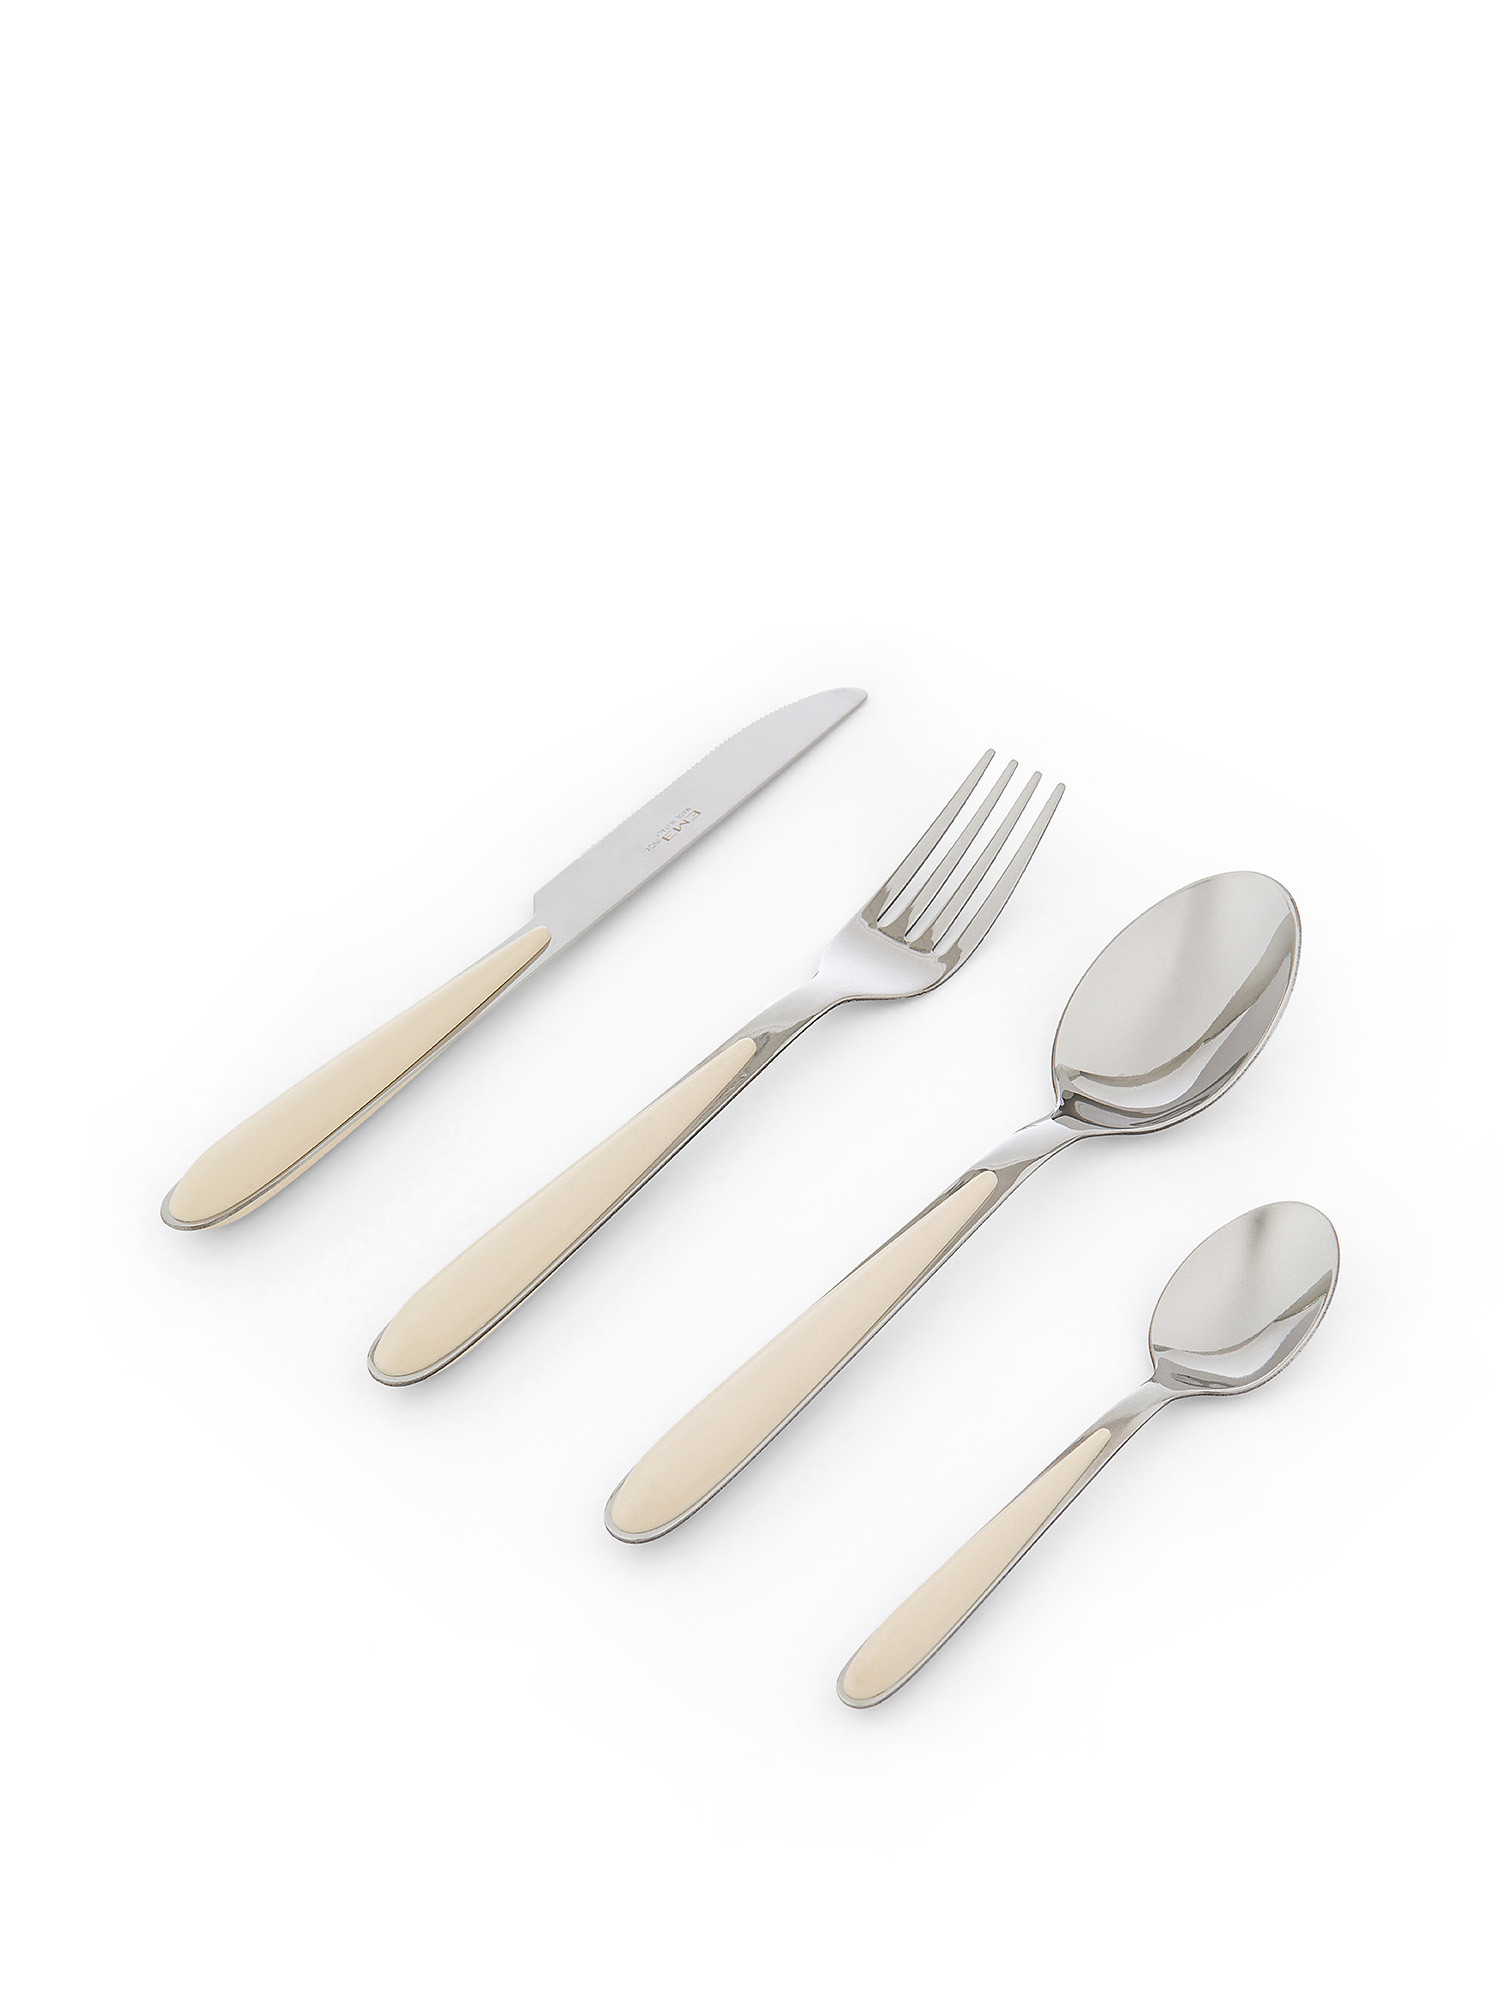 Caribe 24-piece cutlery set, White Ivory, large image number 0